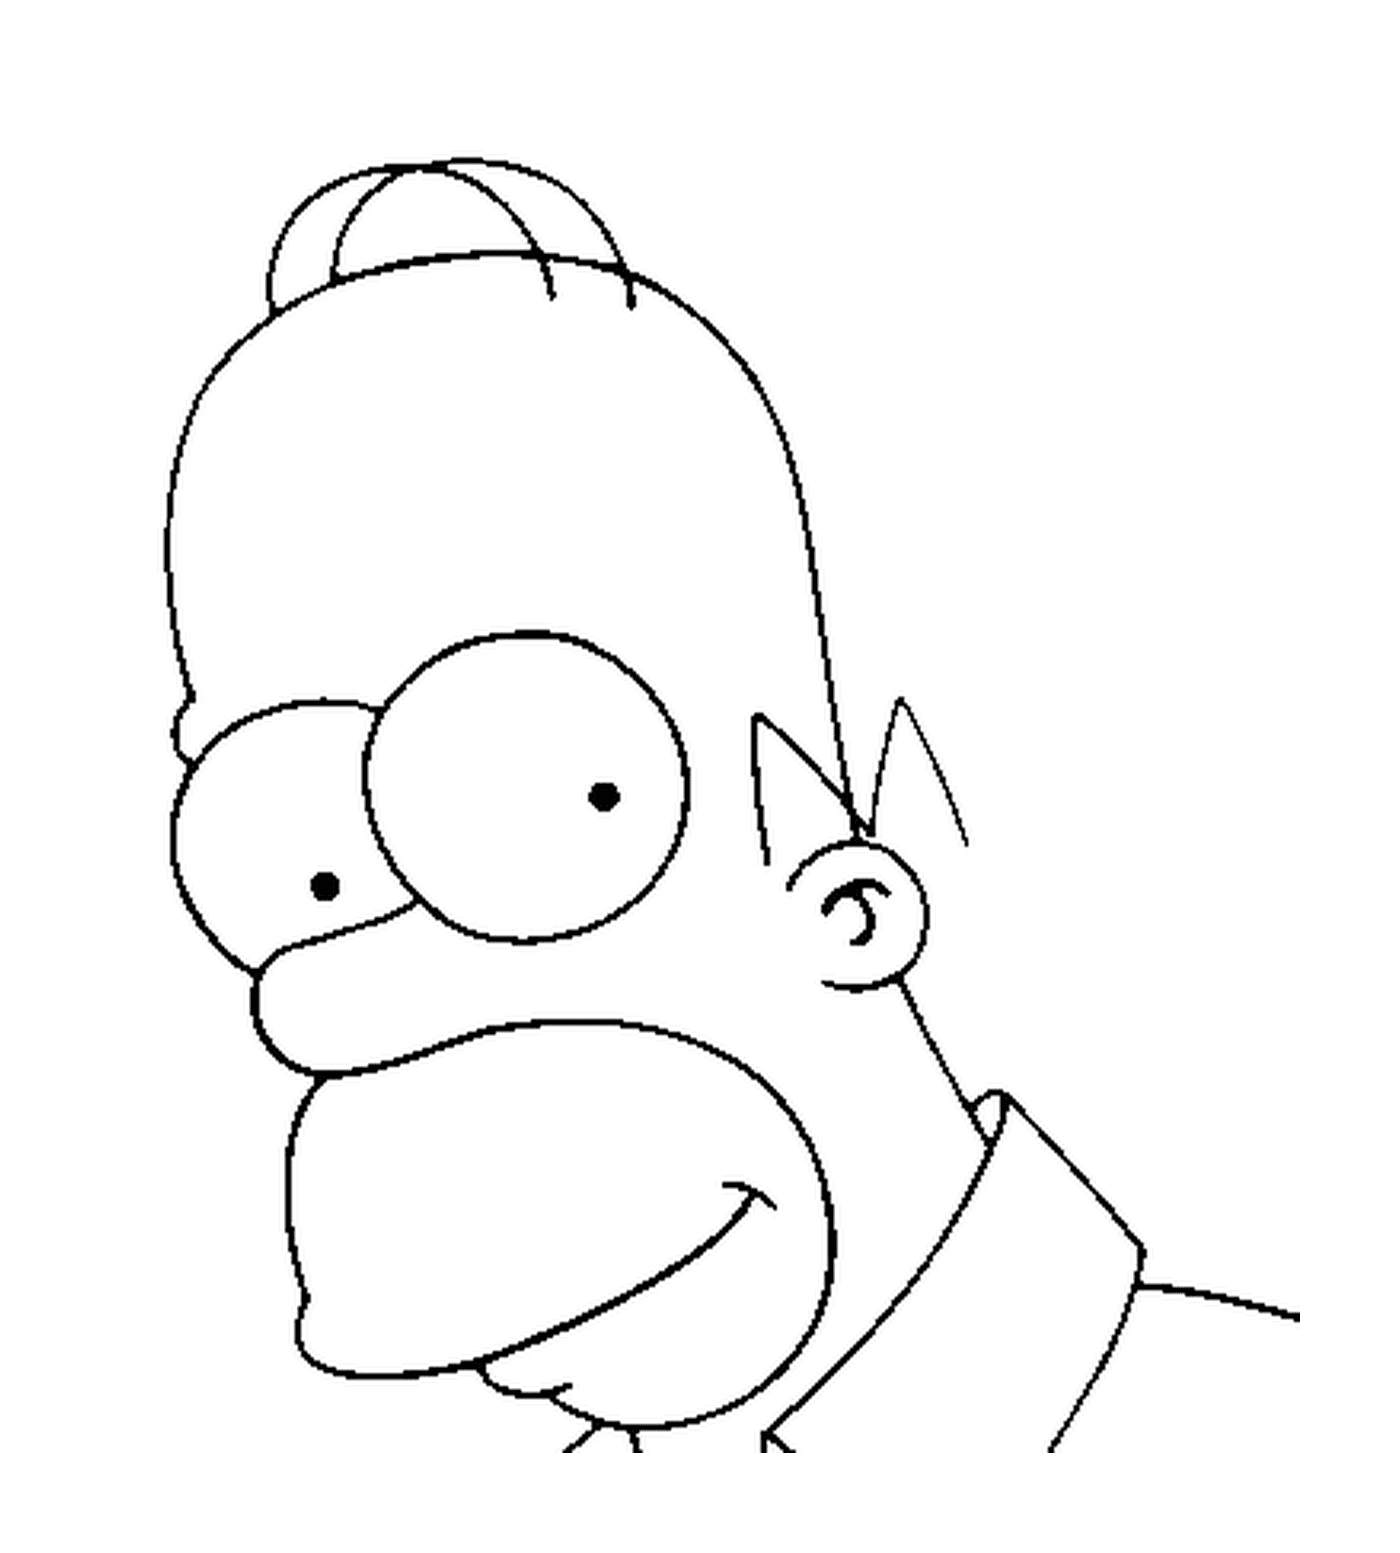  Gesicht von Homer Simpson 